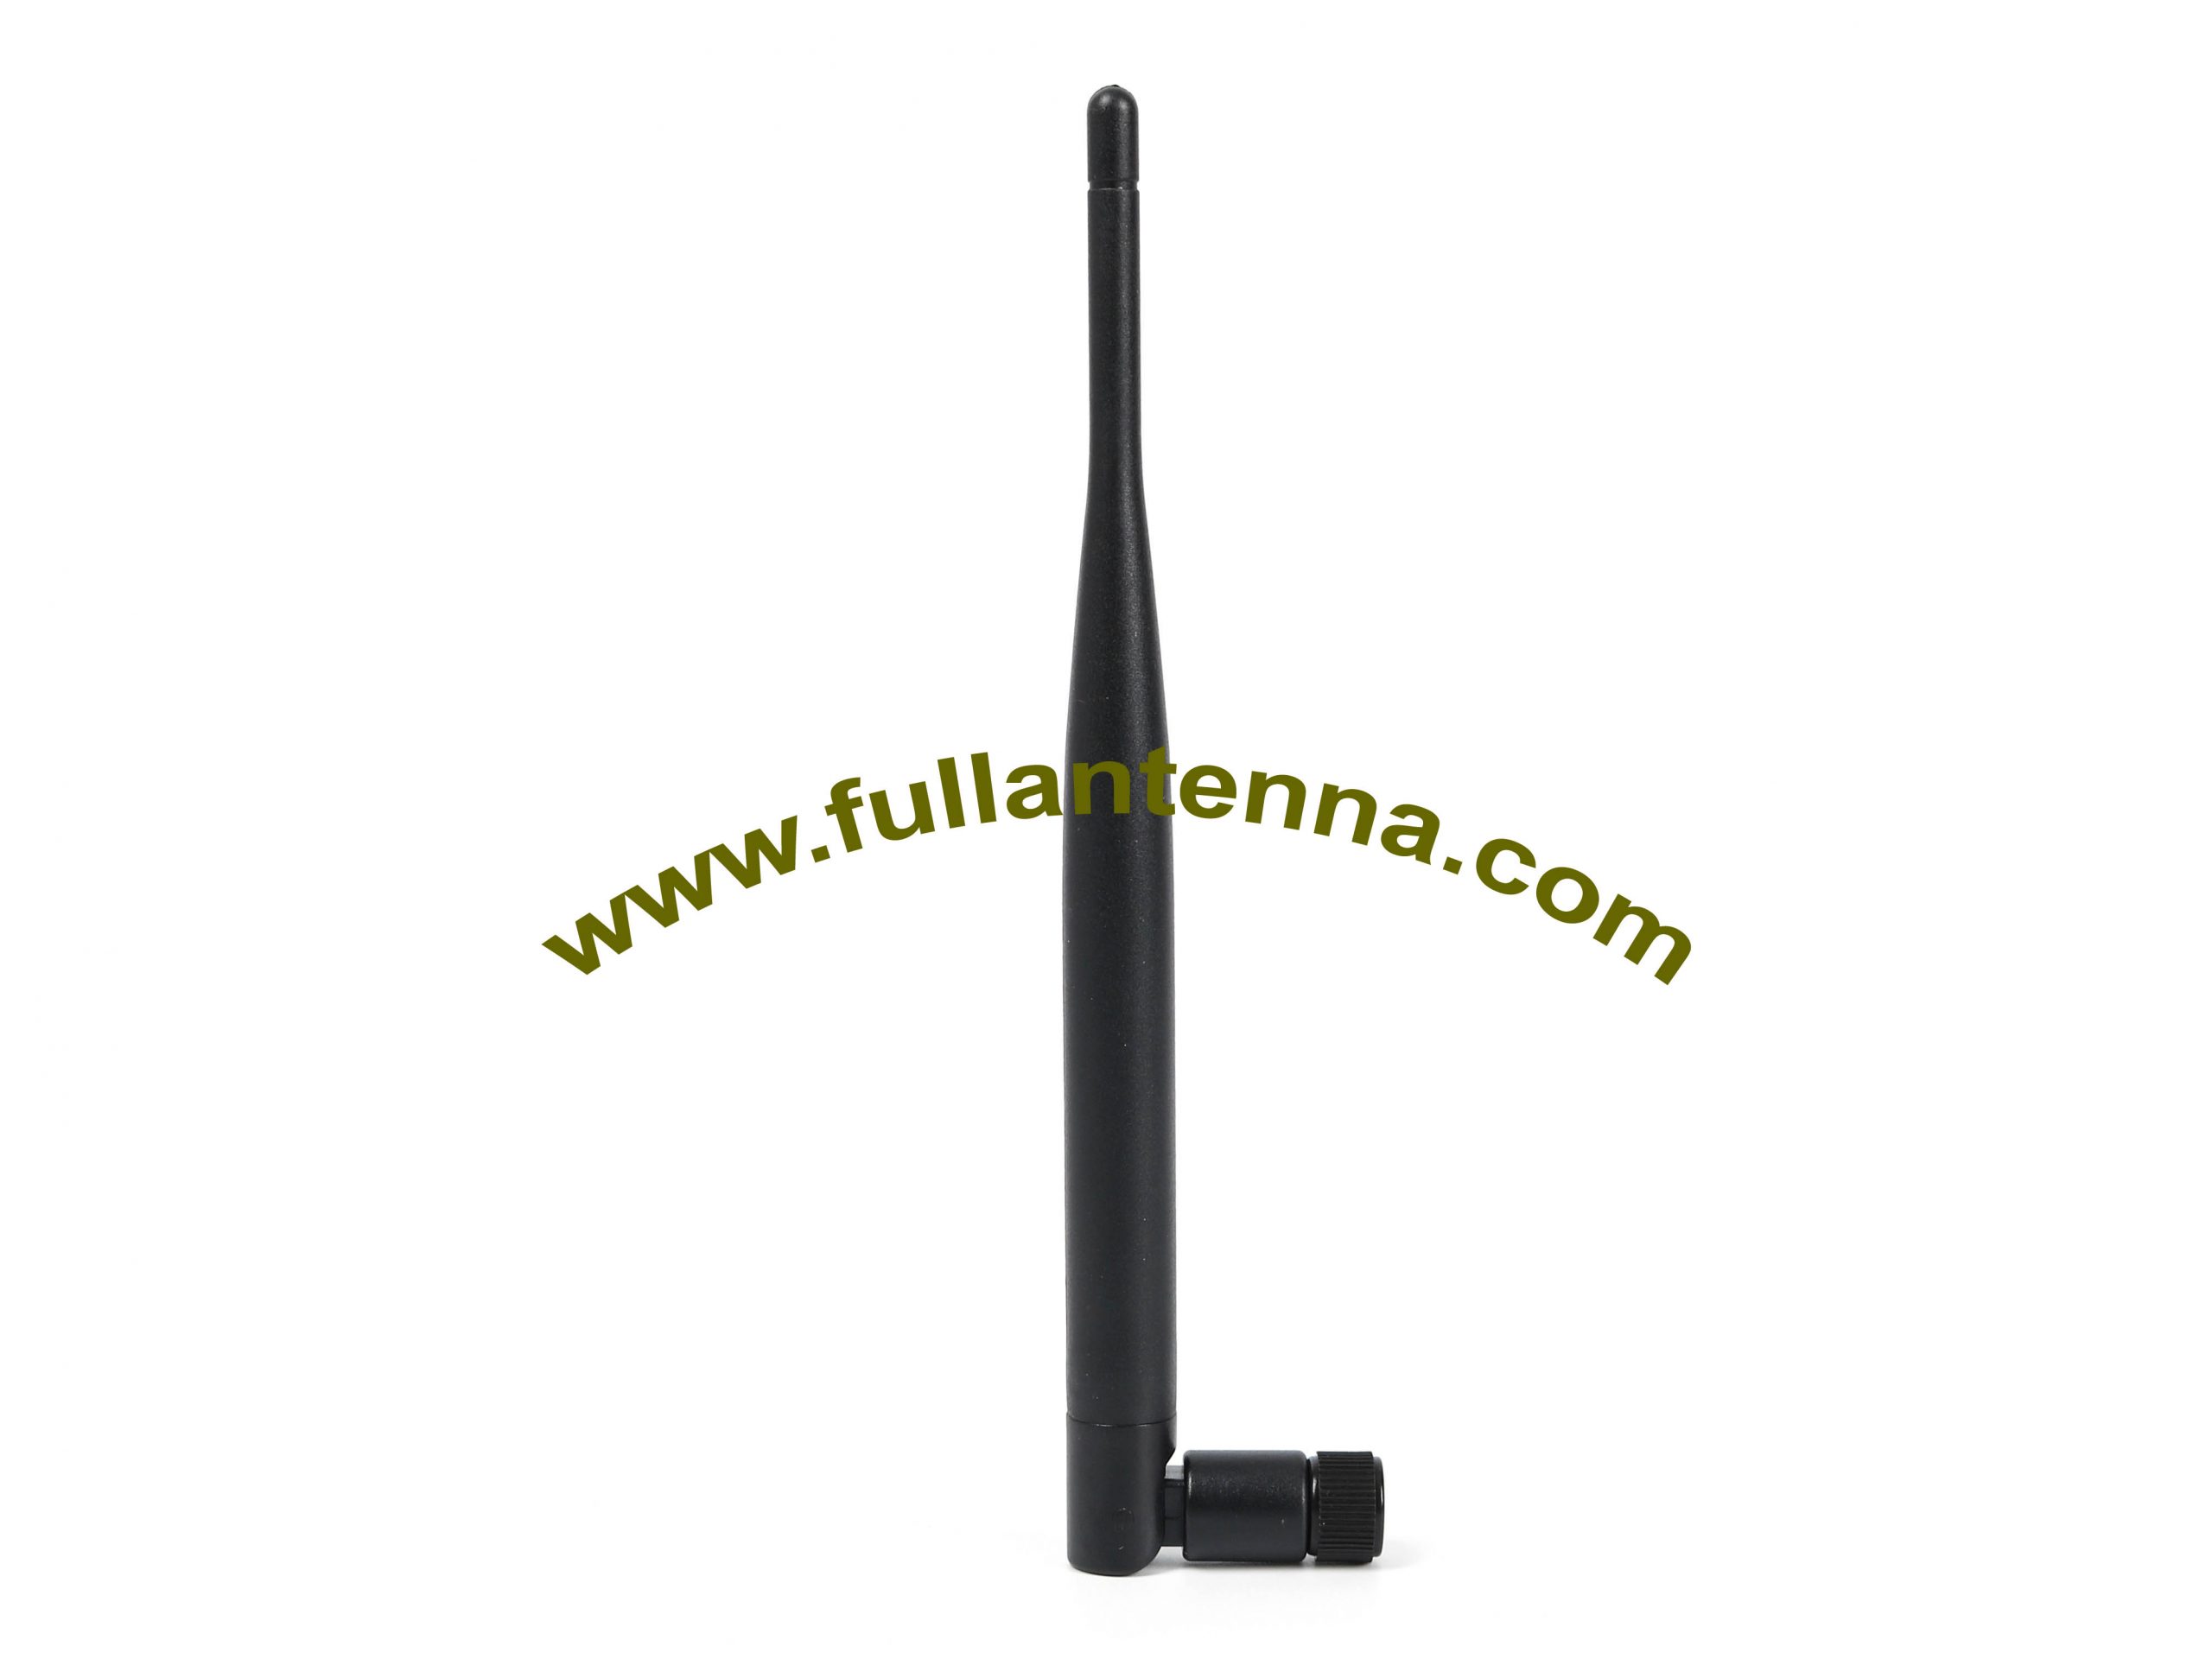 P / N: Antena de goma FA3G.0304,3G, antena de látigo de goma 3G con conector SMA o FME